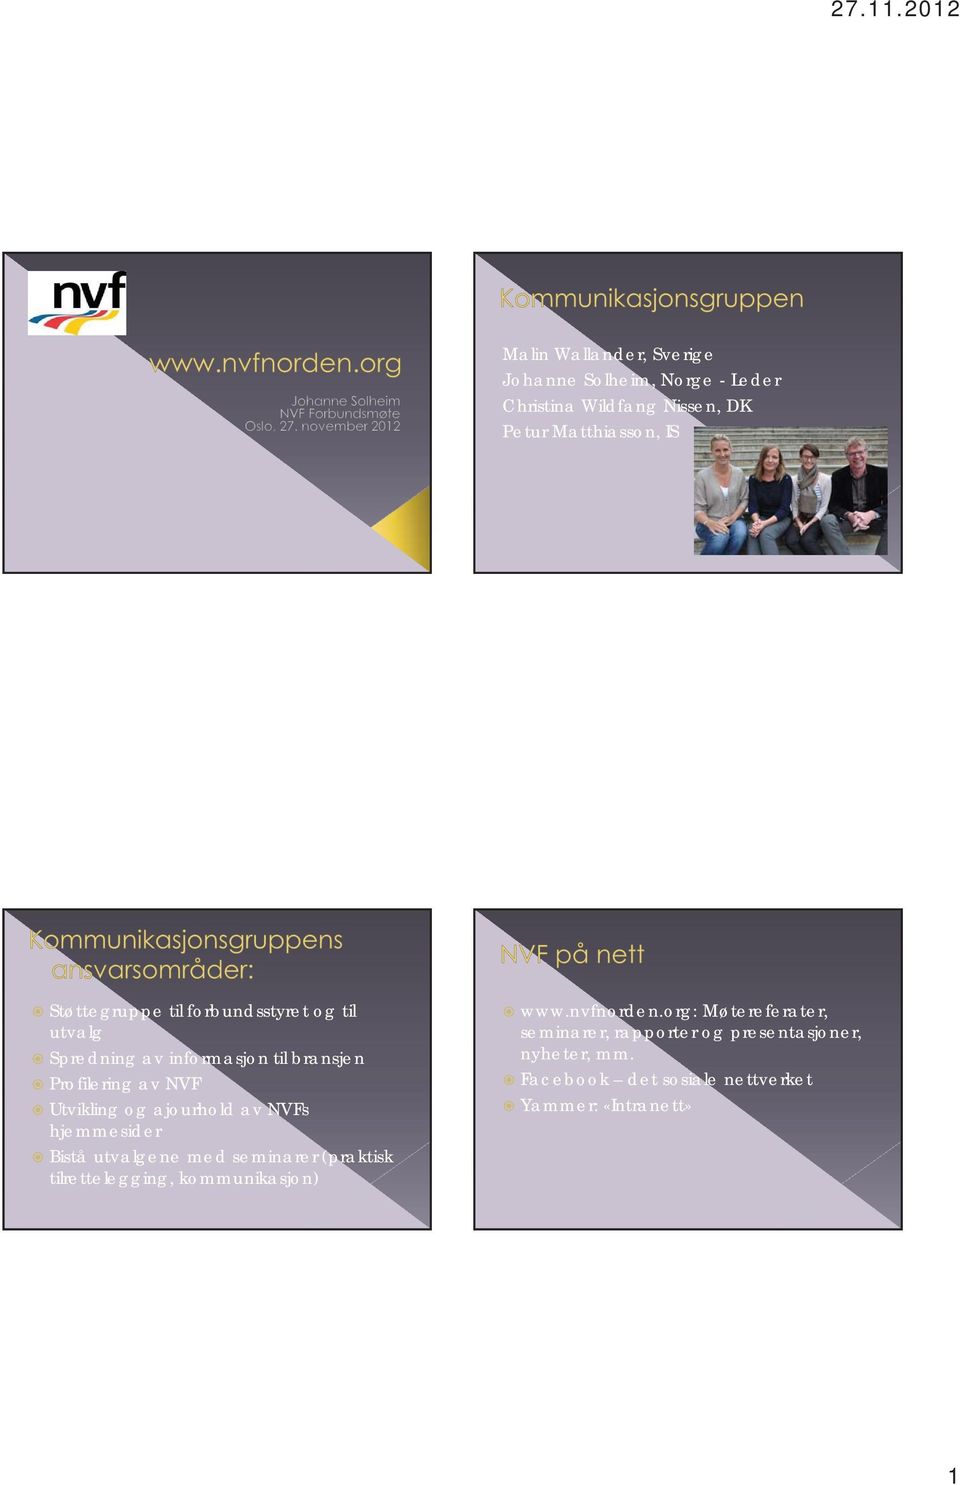 ajourhold av NVFs hjemmesider Bistå utvalgene med seminarer (praktisk tilrettelegging, kommunikasjon) www.nvfnorden.